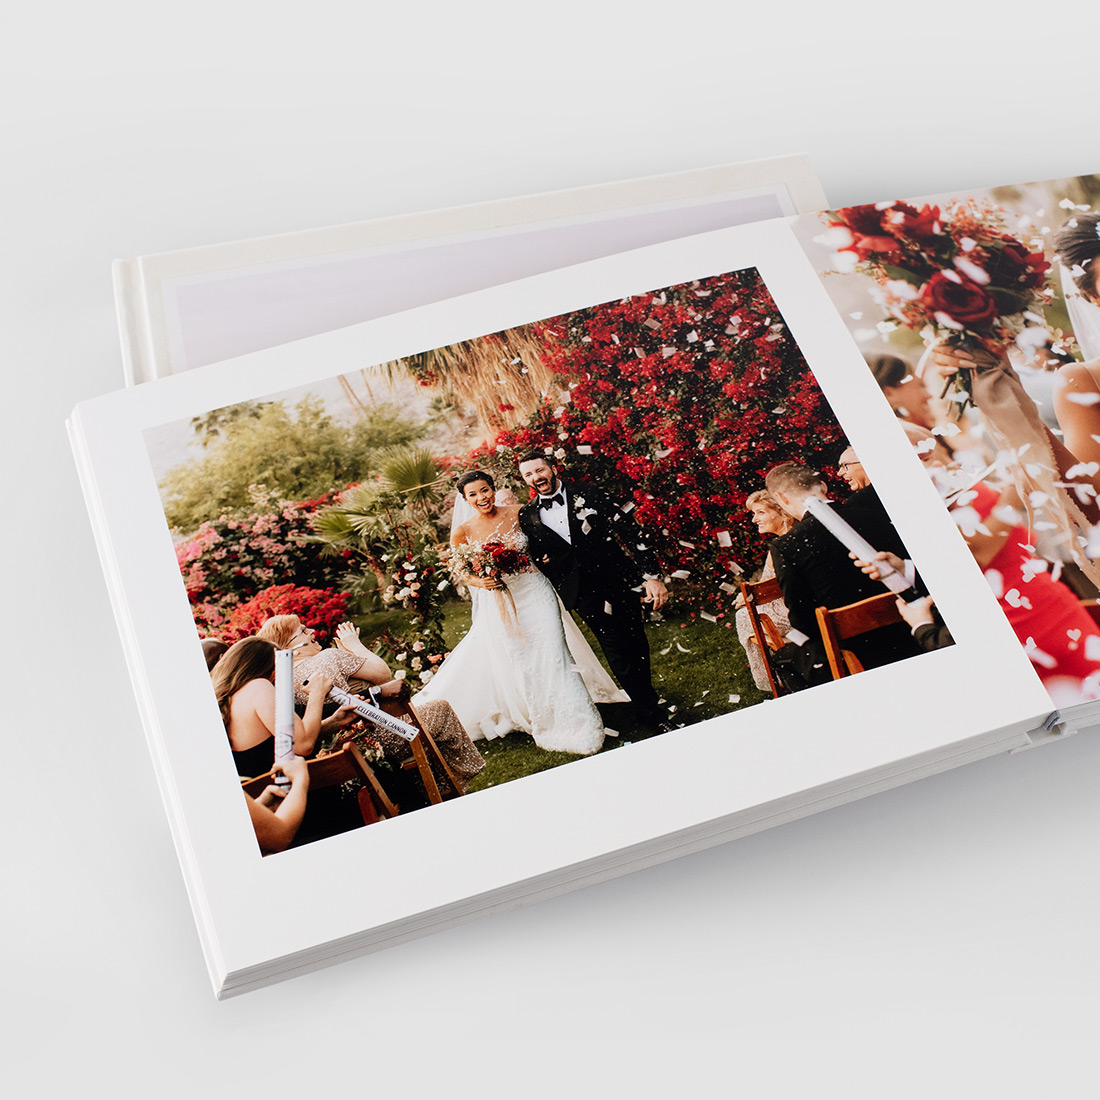 Imagen de boda vibrante en la página del tablero del álbum.